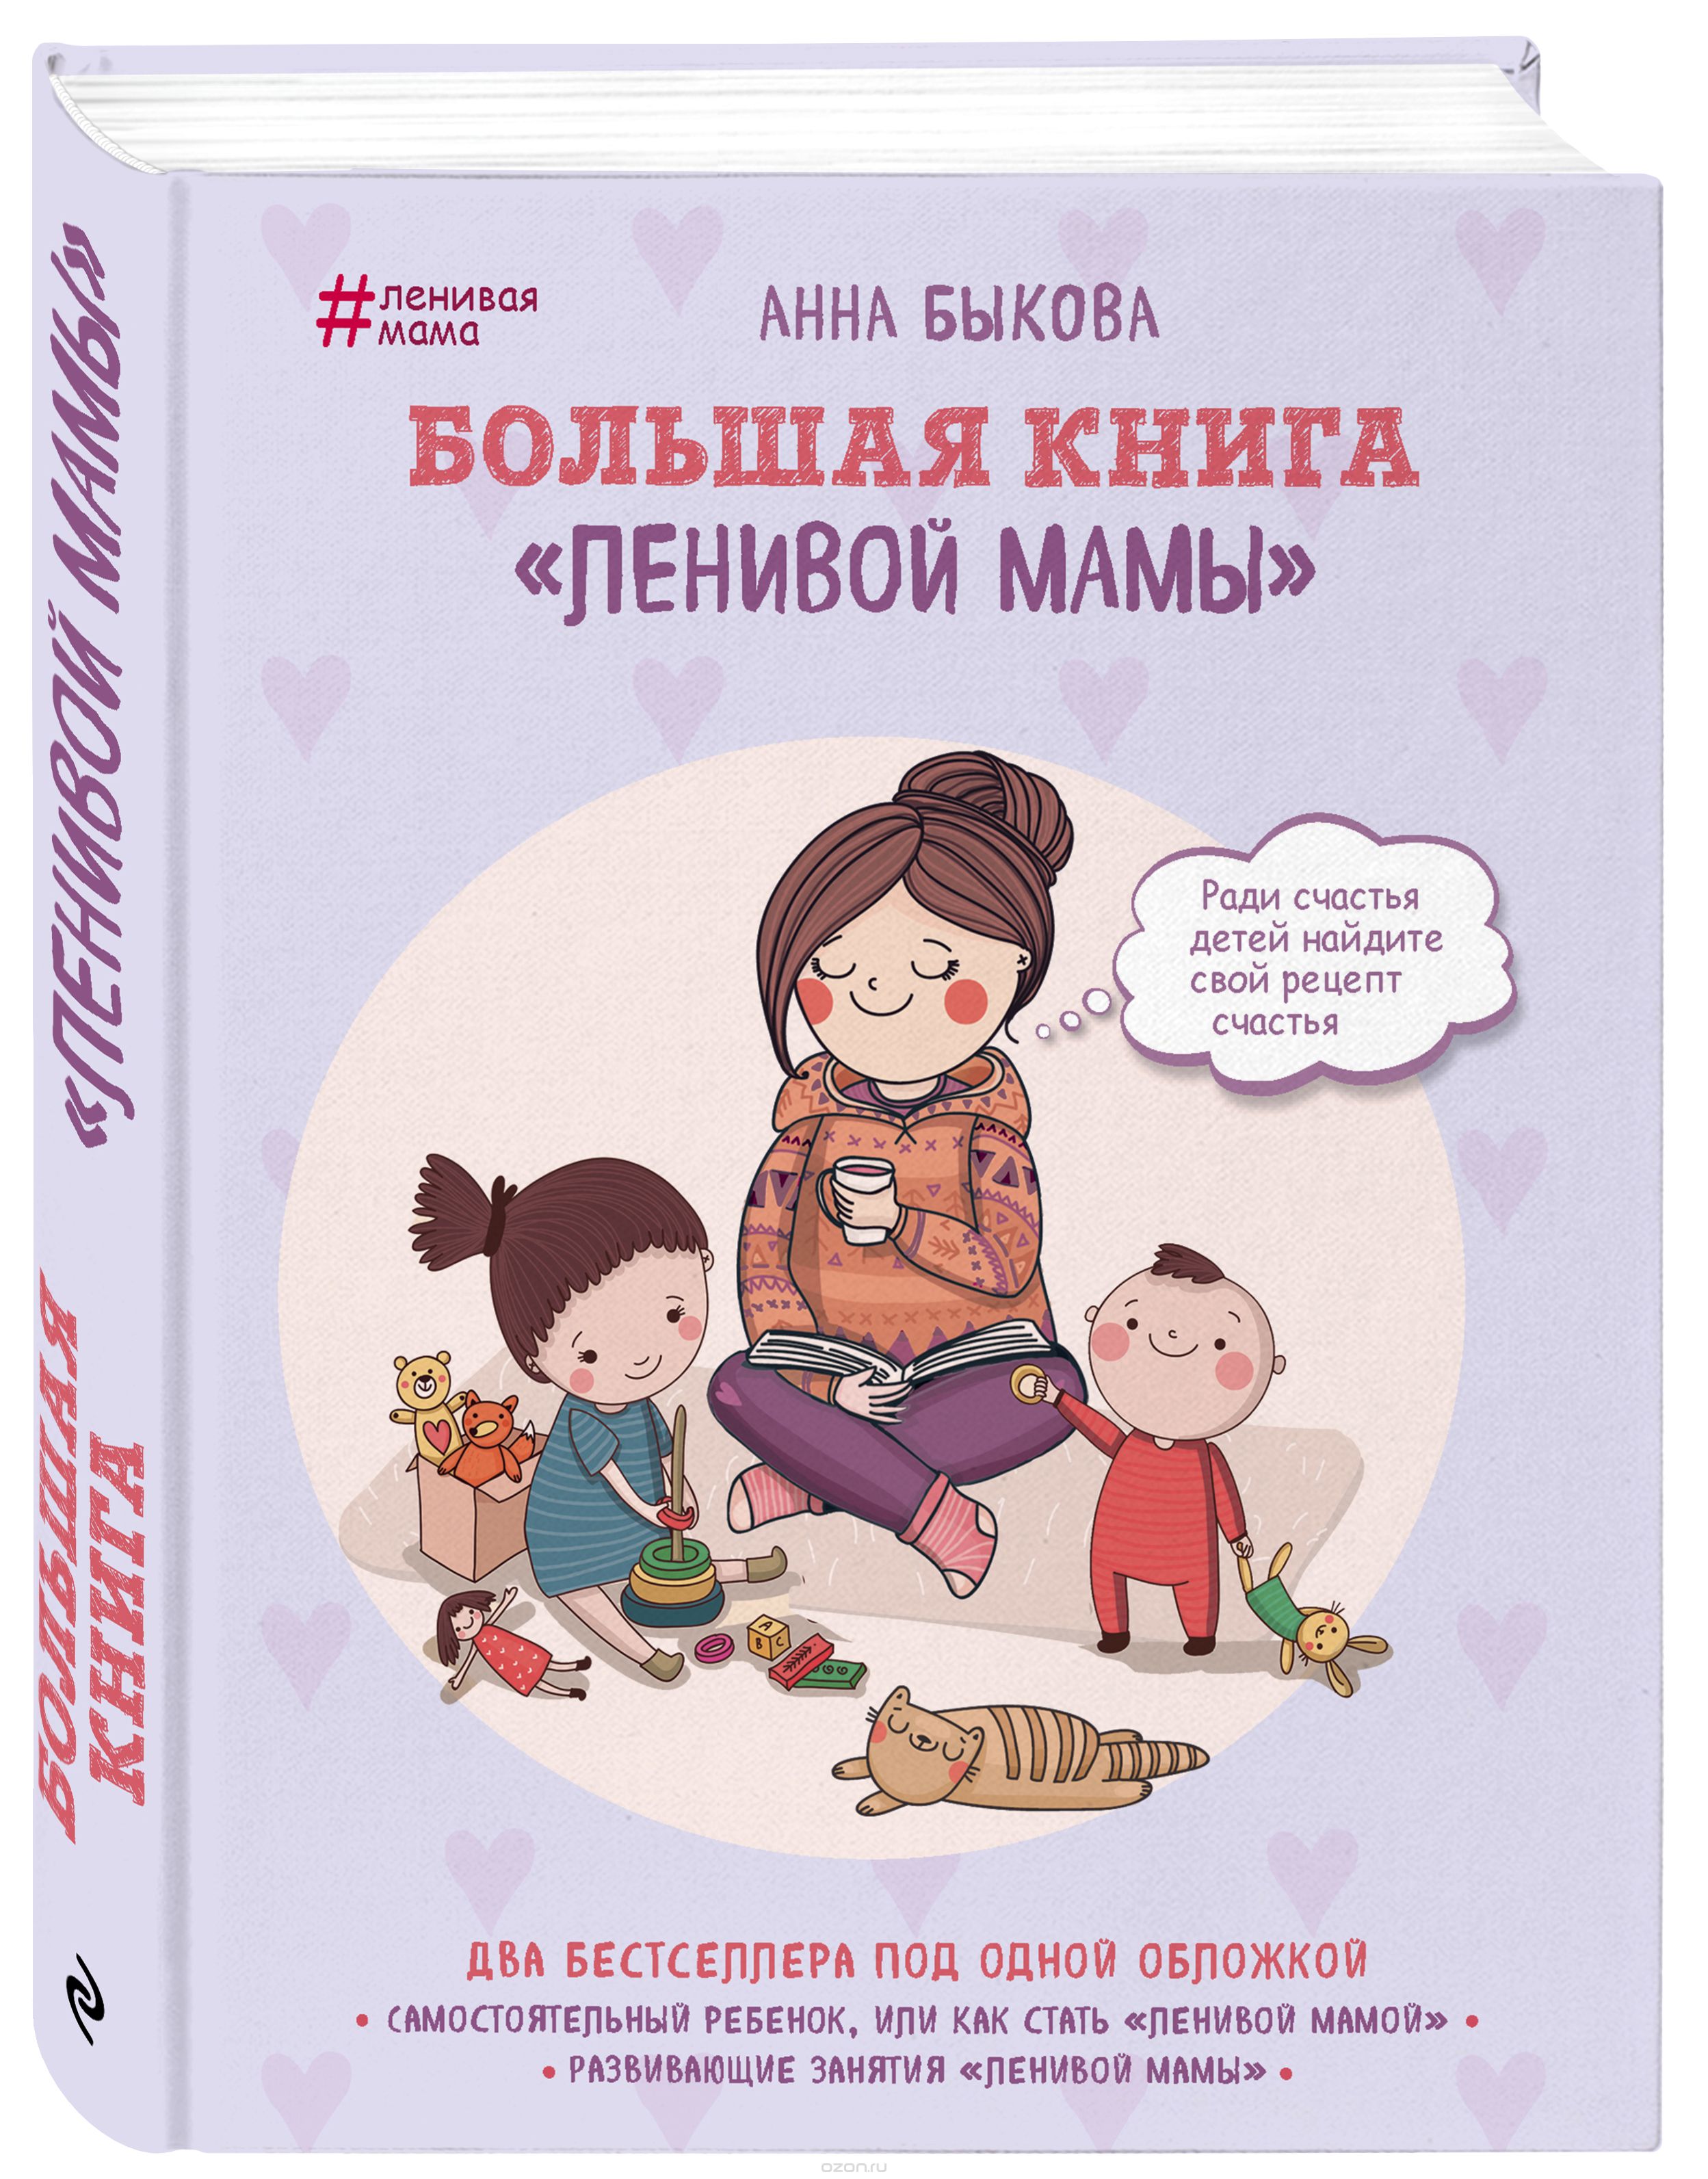 Скачать книгу "Большая книга "ленивой мамы", Анна Быкова"